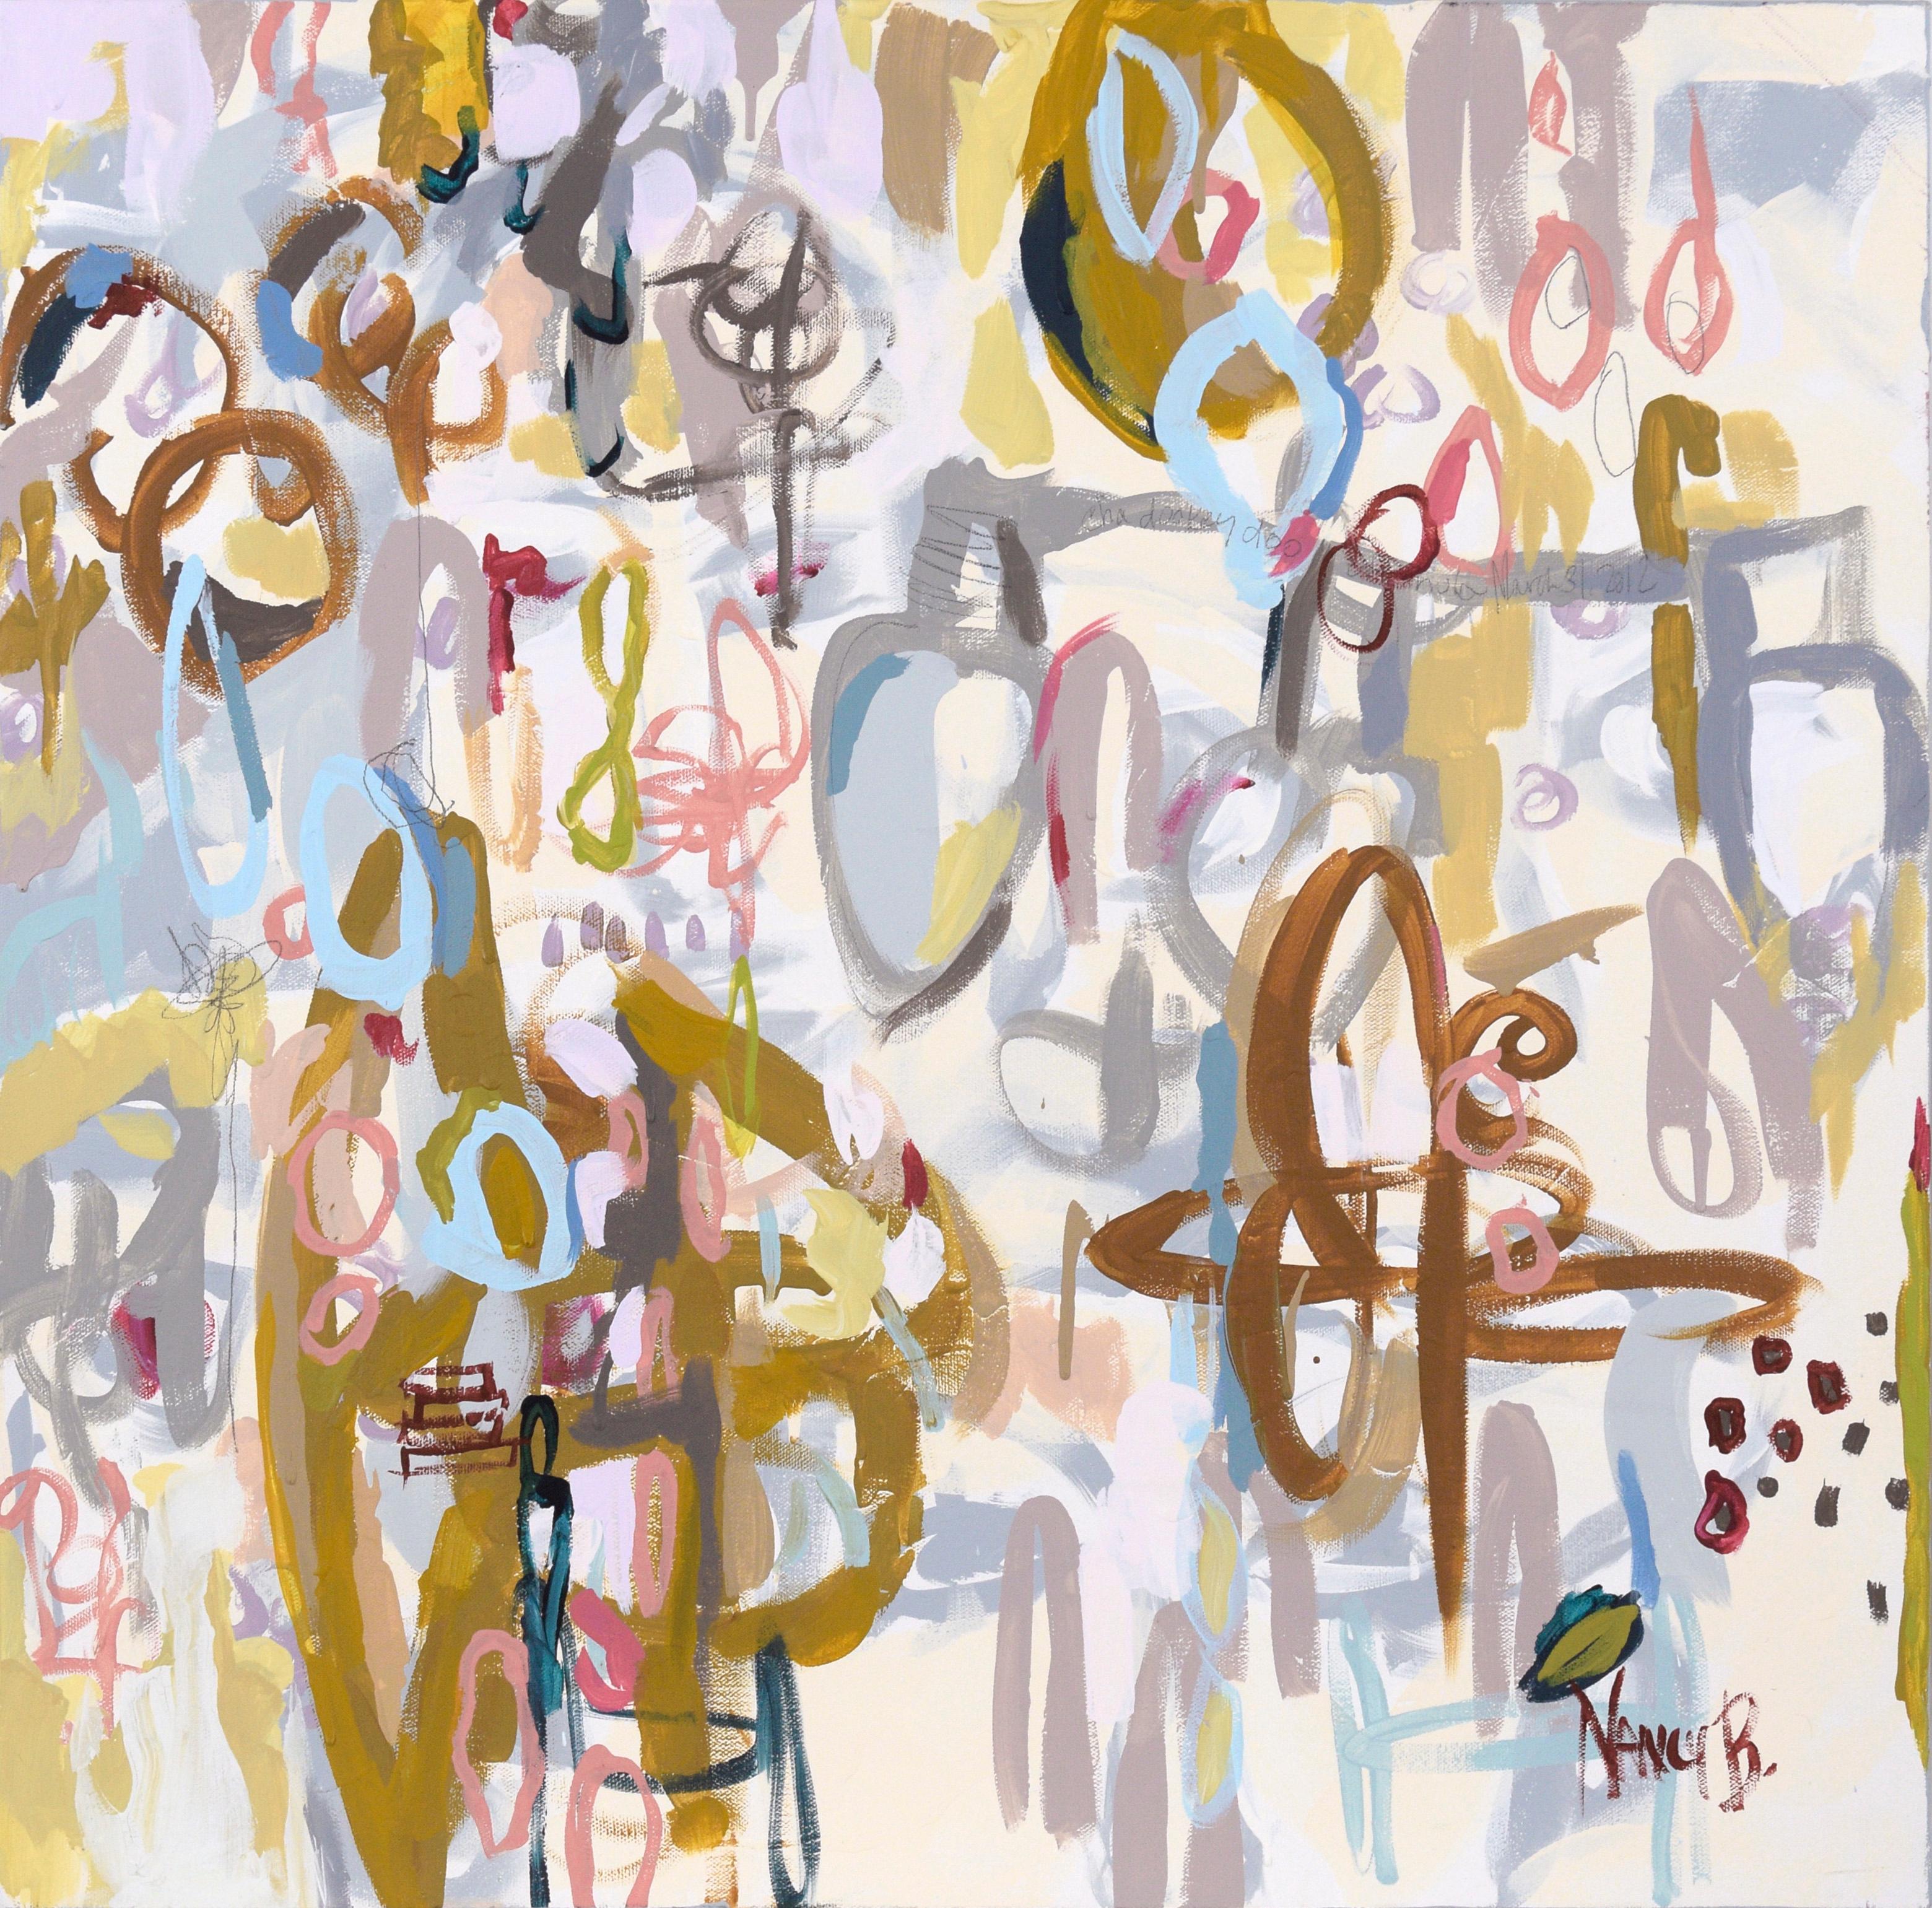 Abstrakt-expressionistische Komposition „Cha Dooky Doo“ aus Acryl auf Leinwand